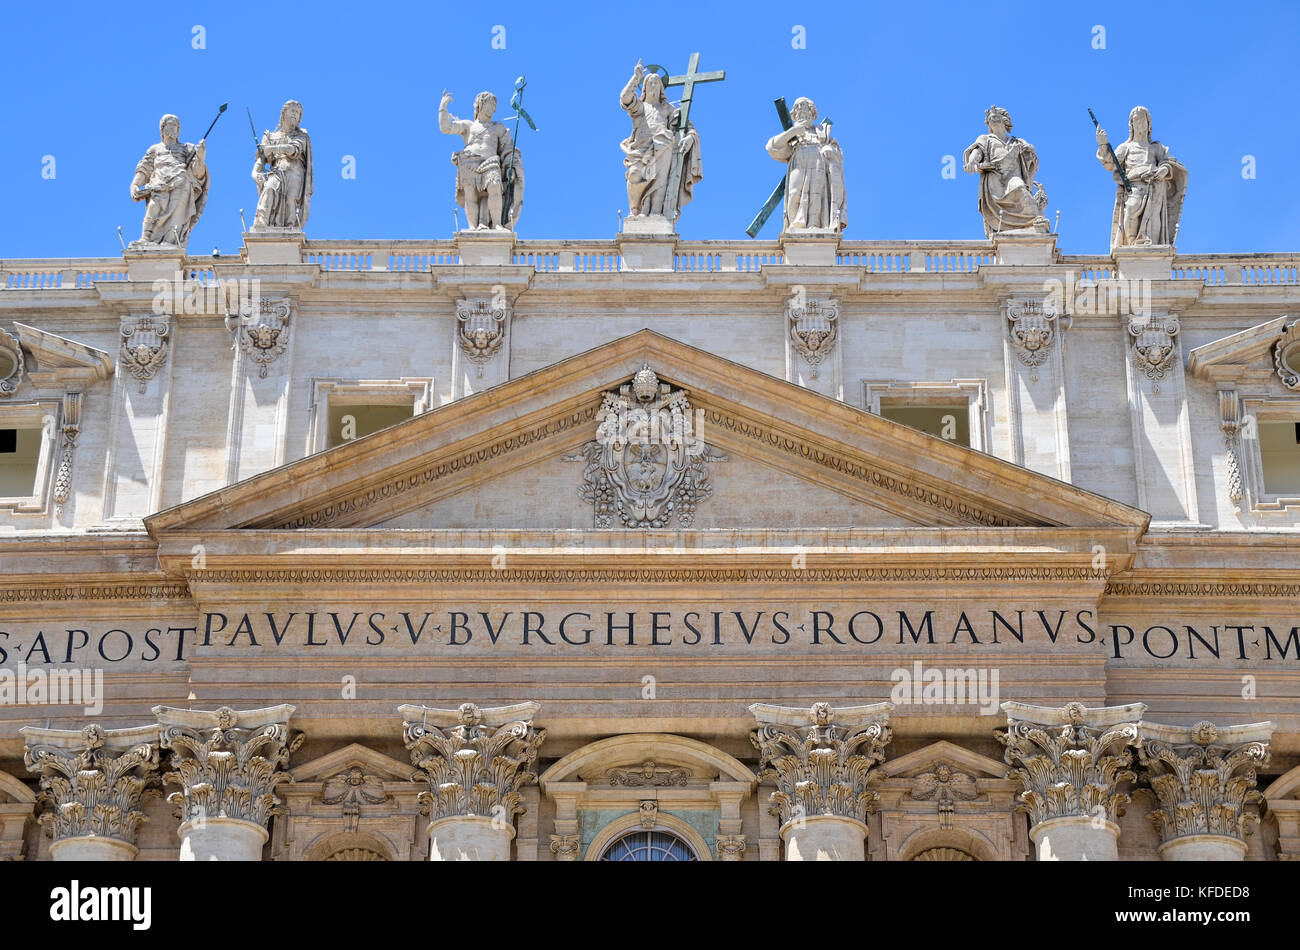 La Basilique Saint-Pierre de Rome, architecture de la Renaissance italienne, et l'UNESCO World Heritage site. Façade à colonnes, inscription et statues de religio Banque D'Images